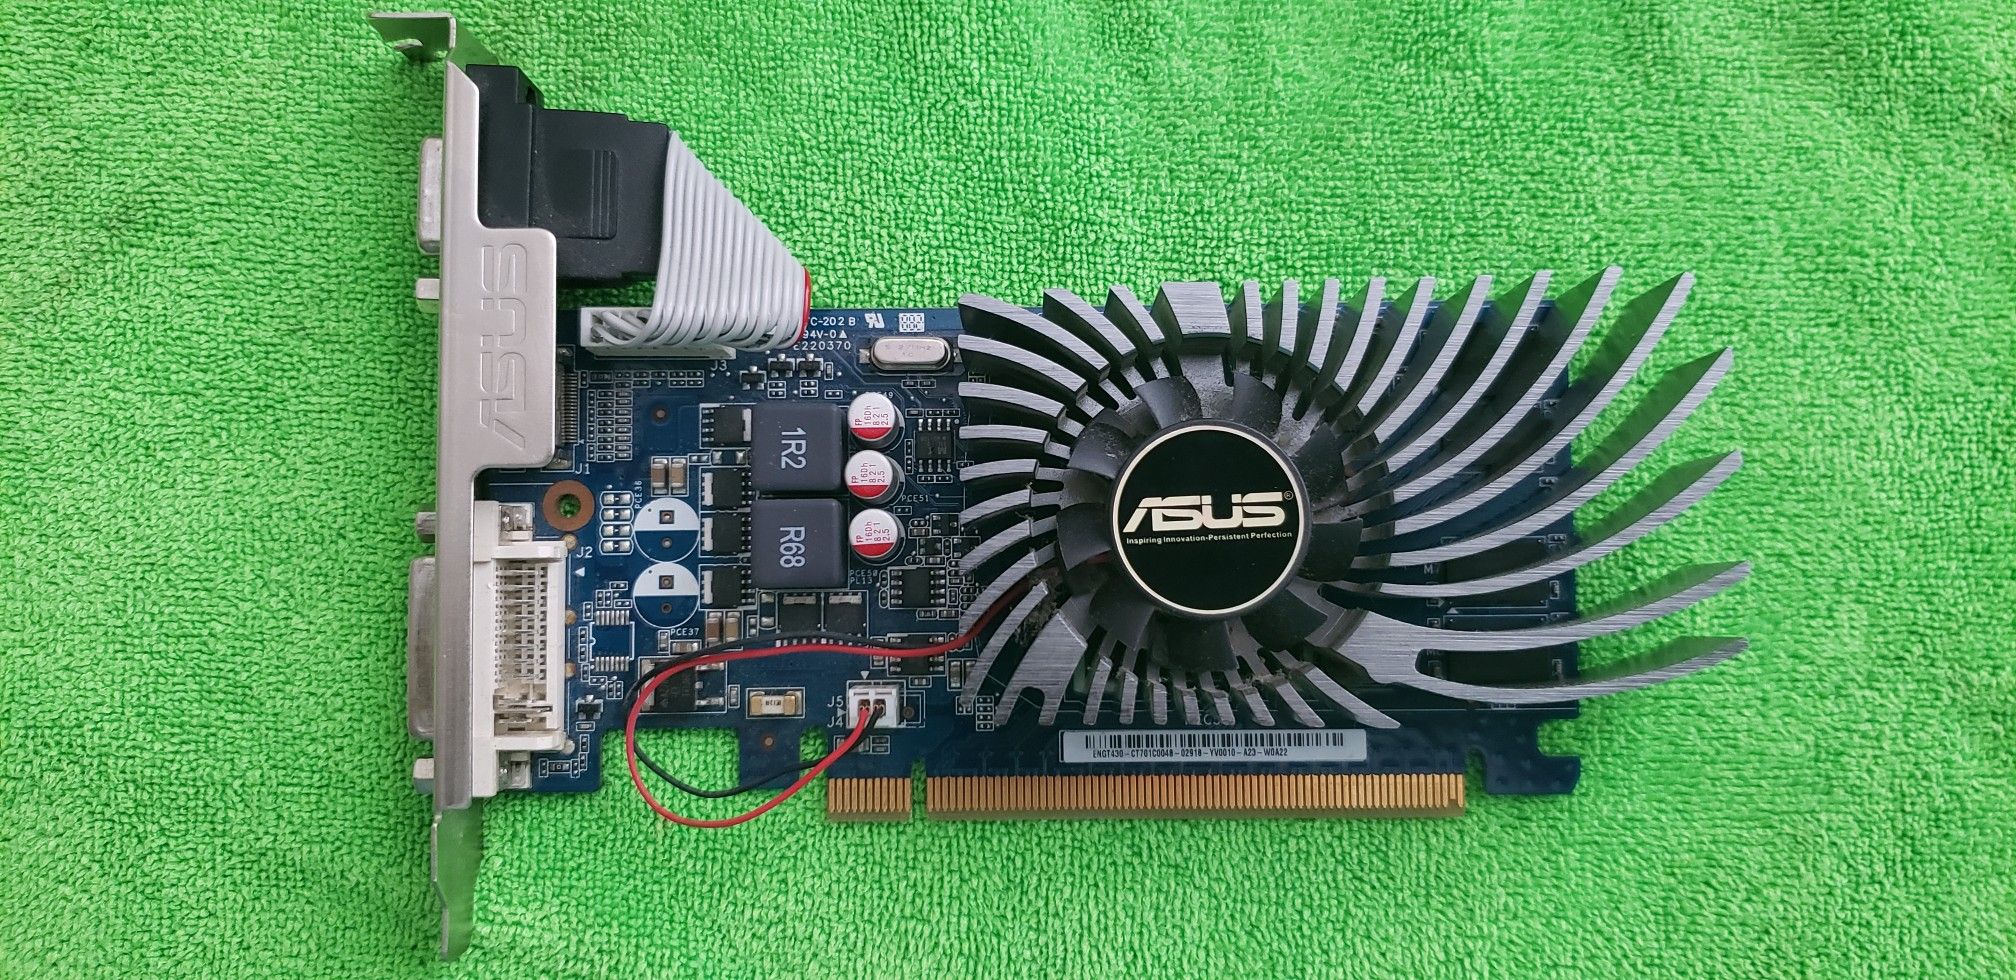 ASUS GT430 GPU